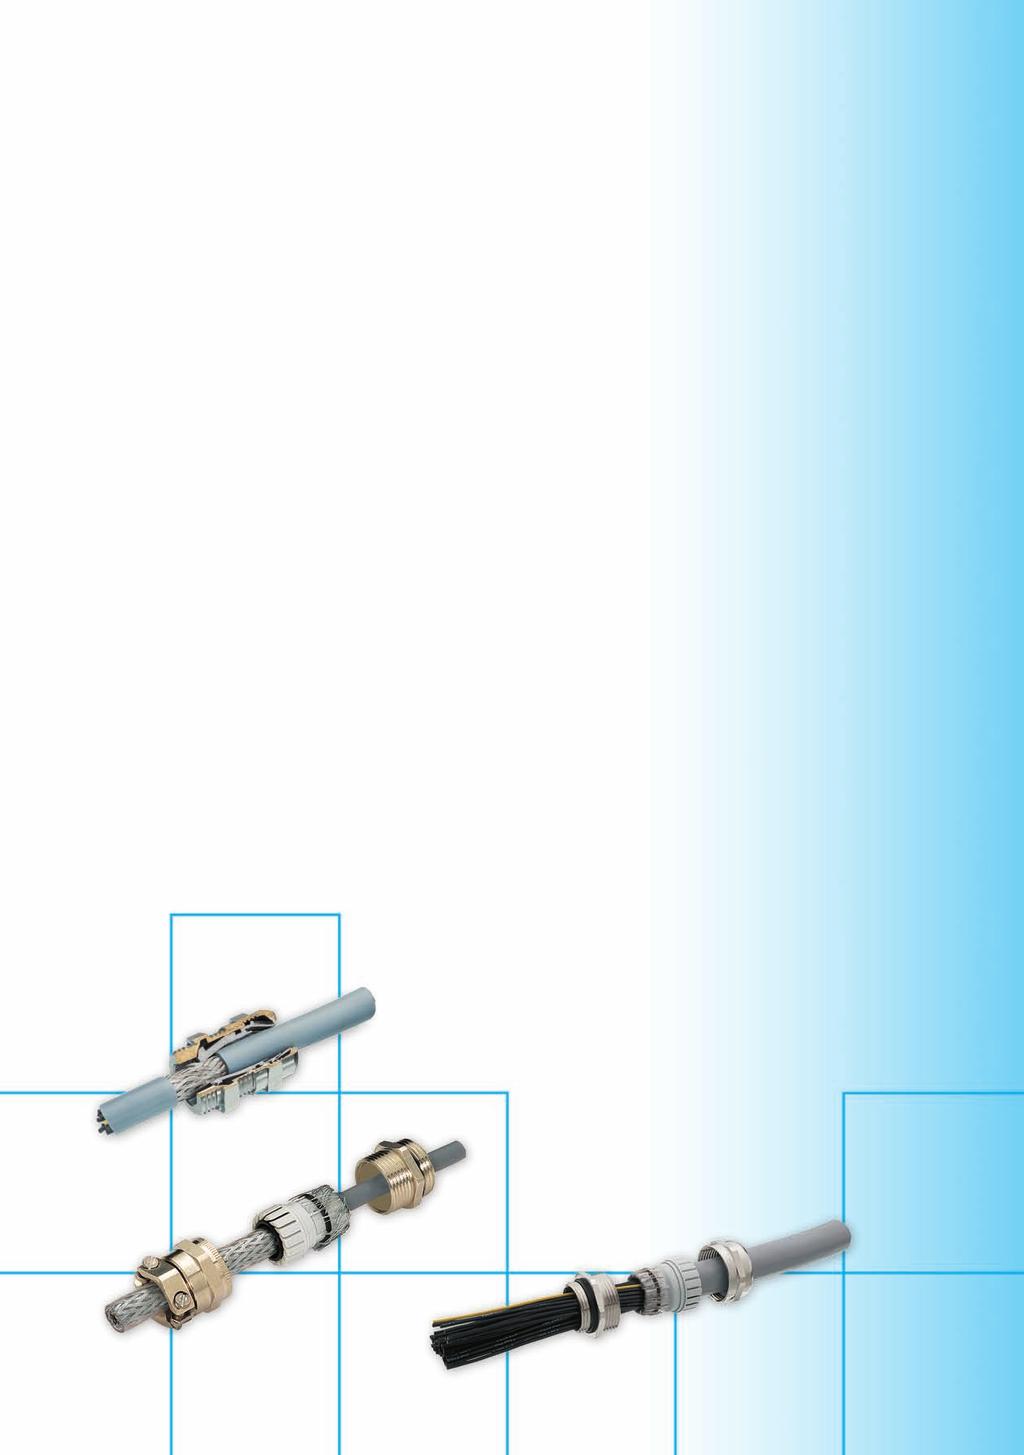 Wir setzen Standards SK-EMV-Ex Standard Kabelverschraubungen mit allen gängigen Anschlussgewinden für die sichere niederohmige Schirmanbindung bei geflecht -